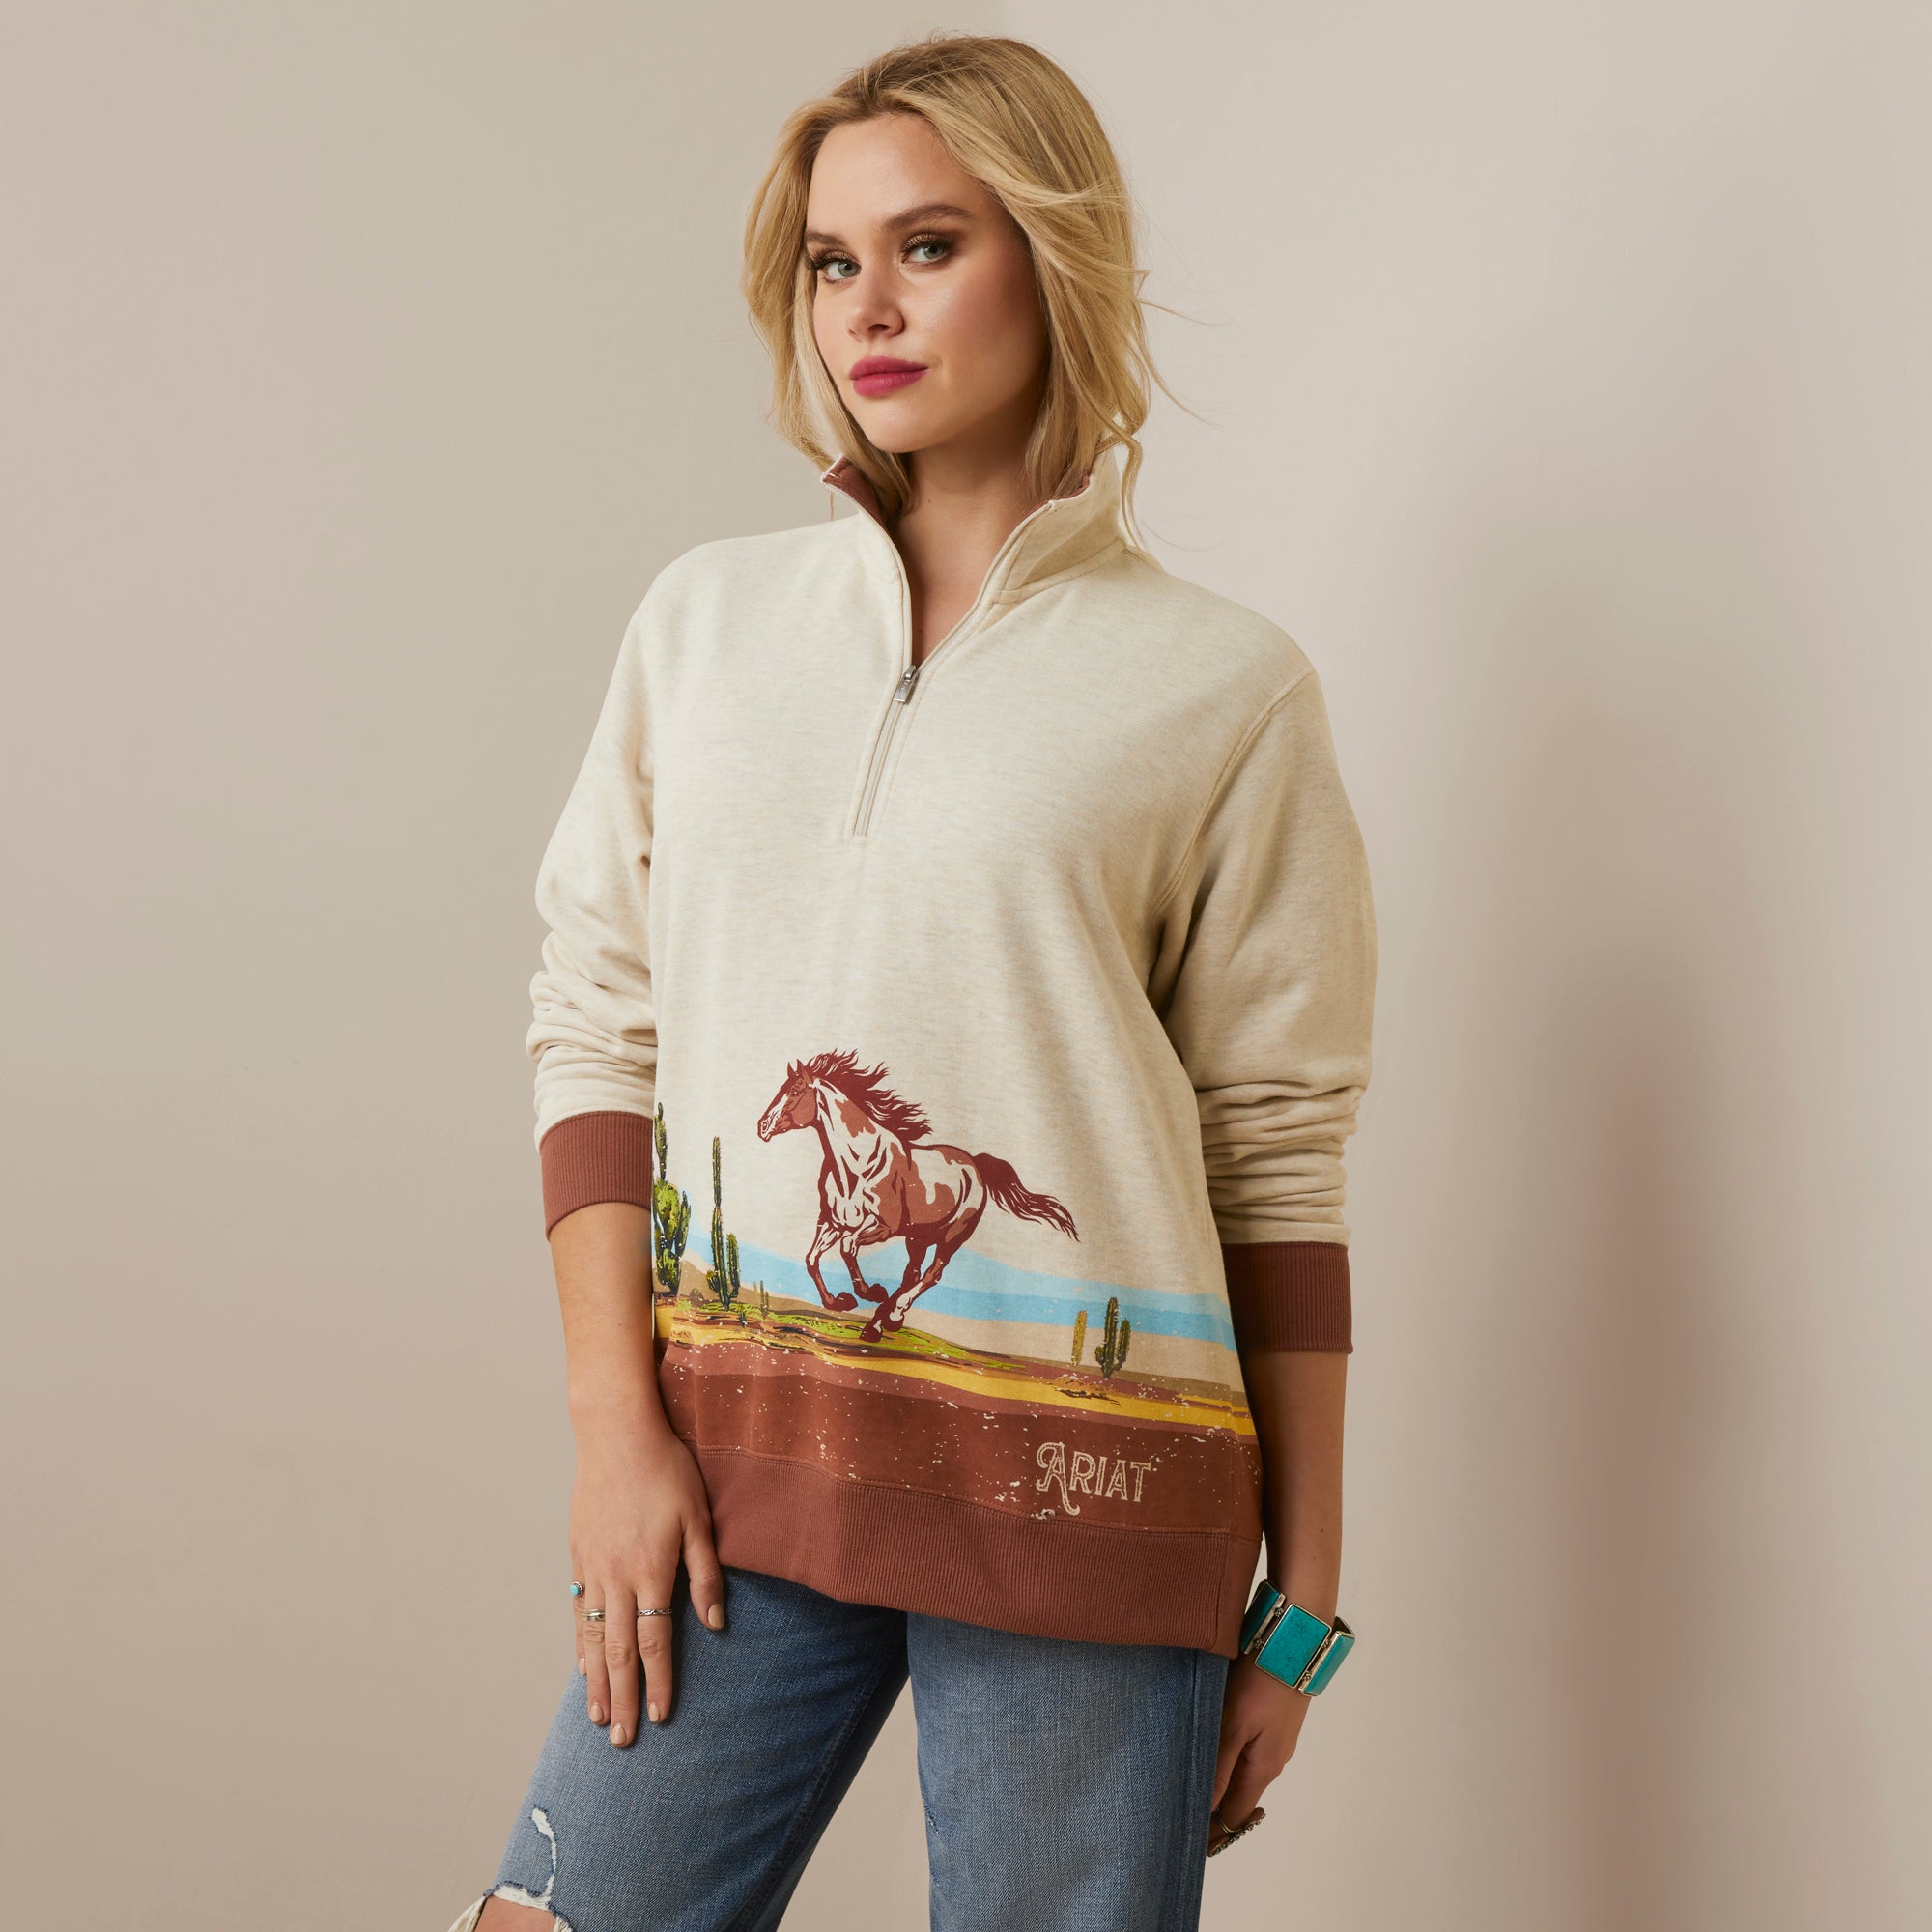 Ariat Women's Wild Horse Sweatshirt, Oatmeal Heather